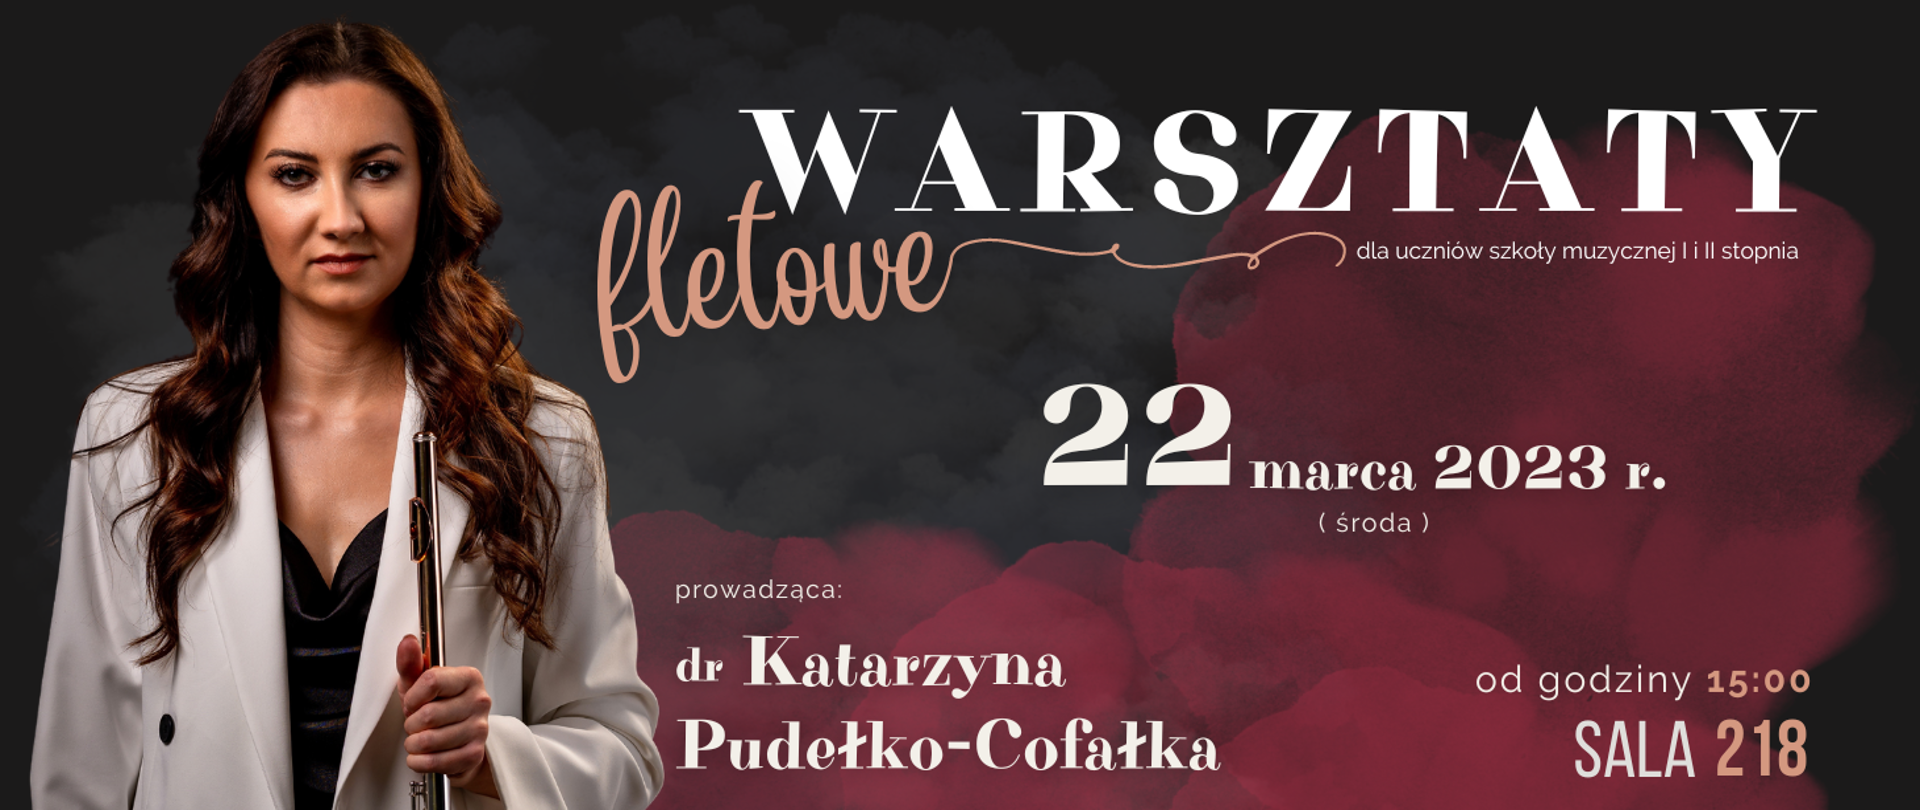 Banner w kolorze szaro-czerwonym, przedstawiający sylwetkę flecistki Katarzyny Pudełko-Cofałka, ze szczegółową informacją dotyczącą warsztatów fletowych (data 22 marca 2023 roku, godzina 15:00, sala 218)